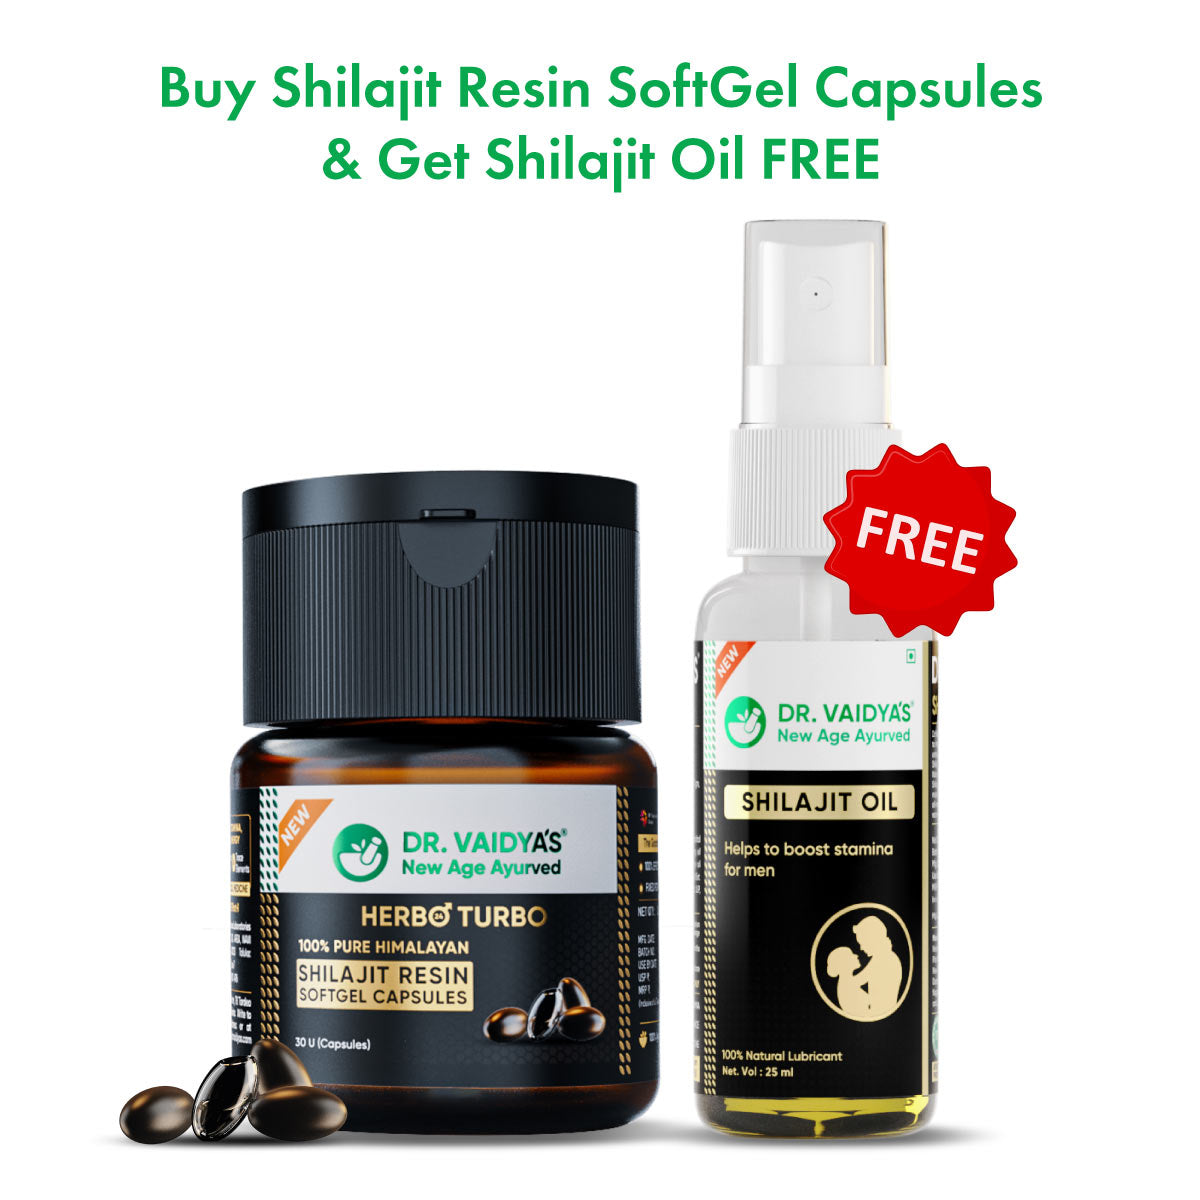 Herbo24Turbo Shilajit Resin SoftGel Capsules + Shilajit Oil FREE